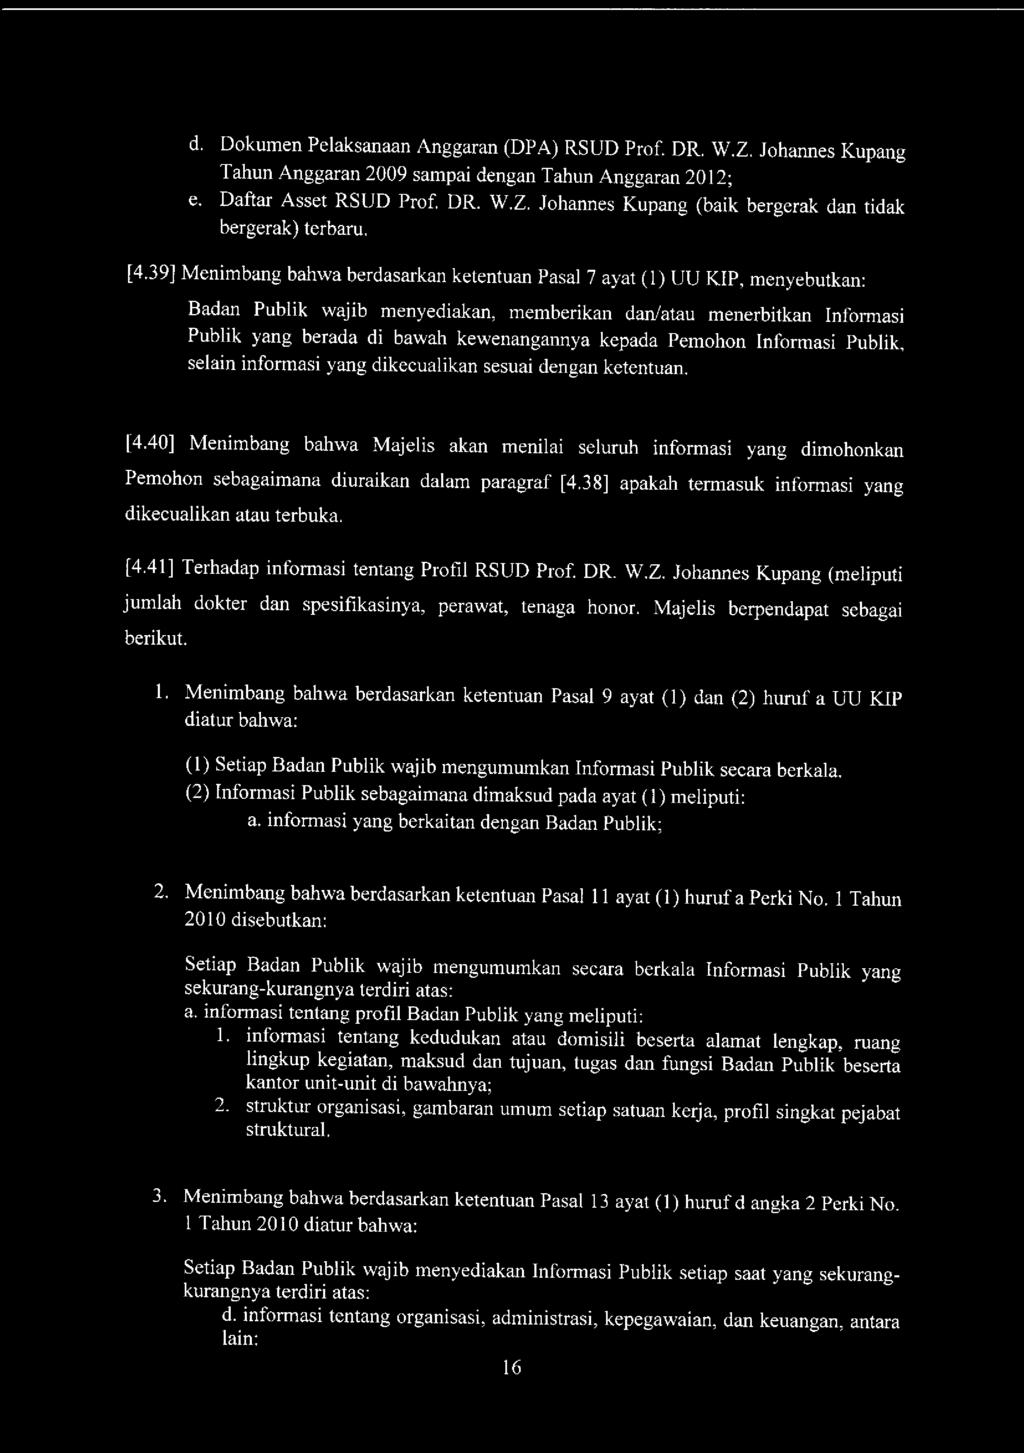 d. Dokumen Pelaksanaan Anggaran (DPA) RSUD Prof. DR. W.Z. Johannes Kupang Tahun Anggaran 2009 sampai dengan Tahun Anggaran 2012; e. Daftar Asset RSUD Prof. DR. W.Z. Johannes Kupang (baik bergerak dan tidak bergerak) terbaru.